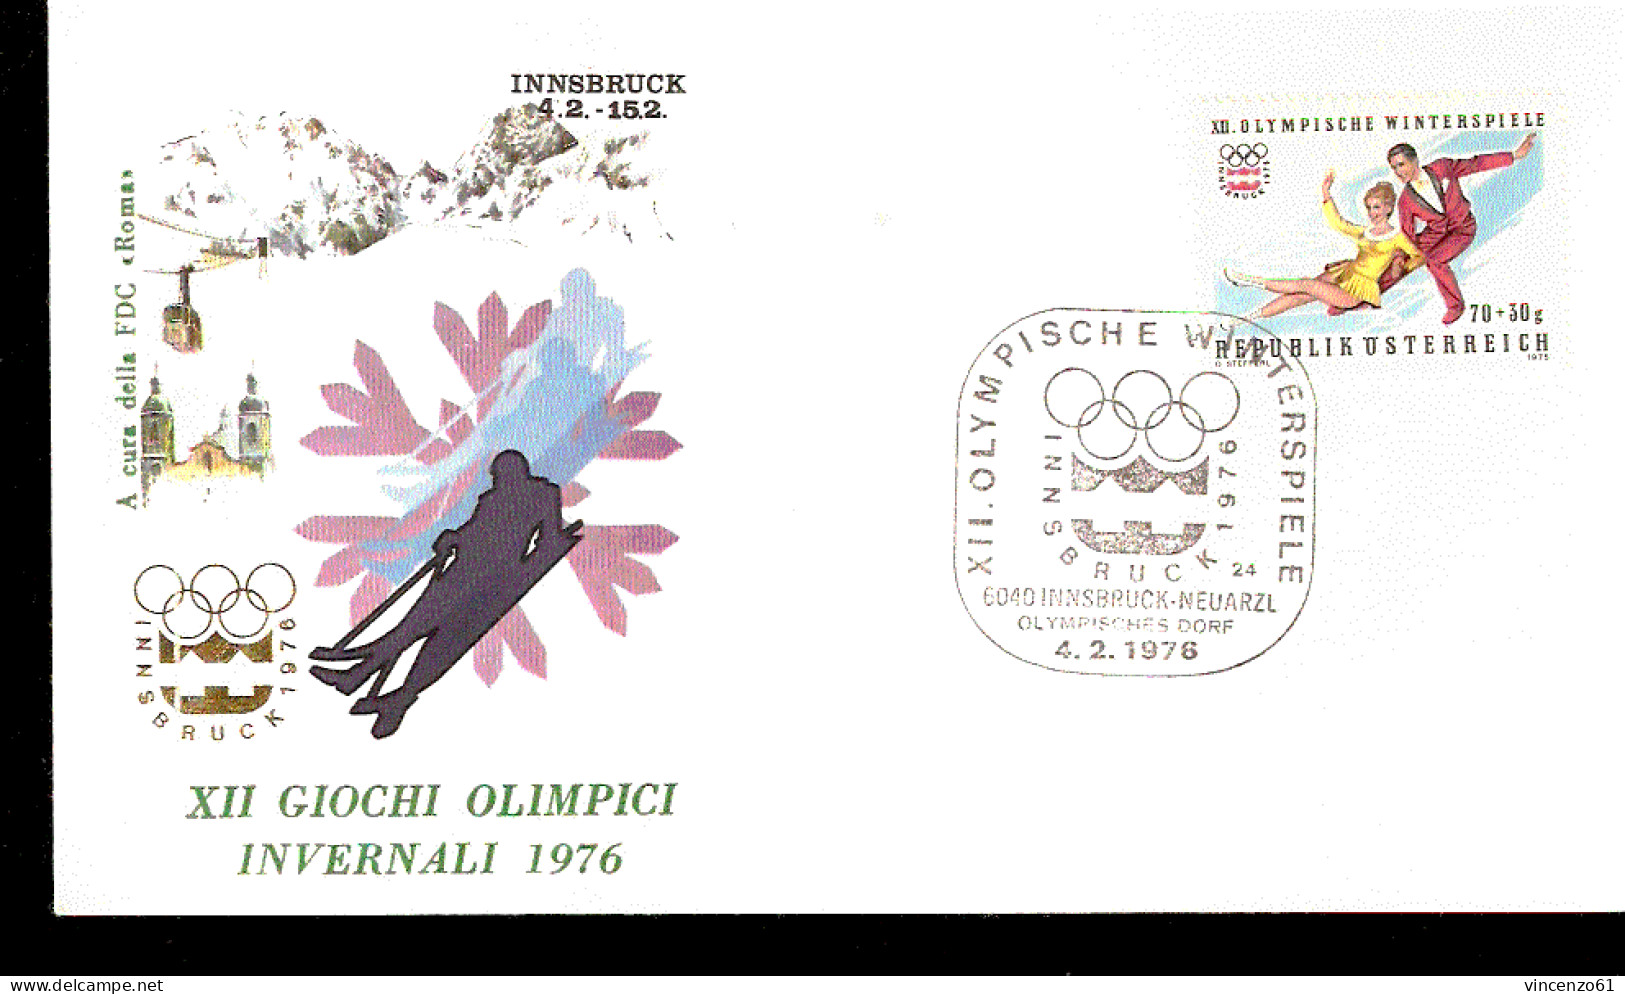 XII GIOCHI OLIMPICI DI INNSBRUCK 1976 SCI PATTINAGGIO ARTISTICO - Inverno1976: Innsbruck